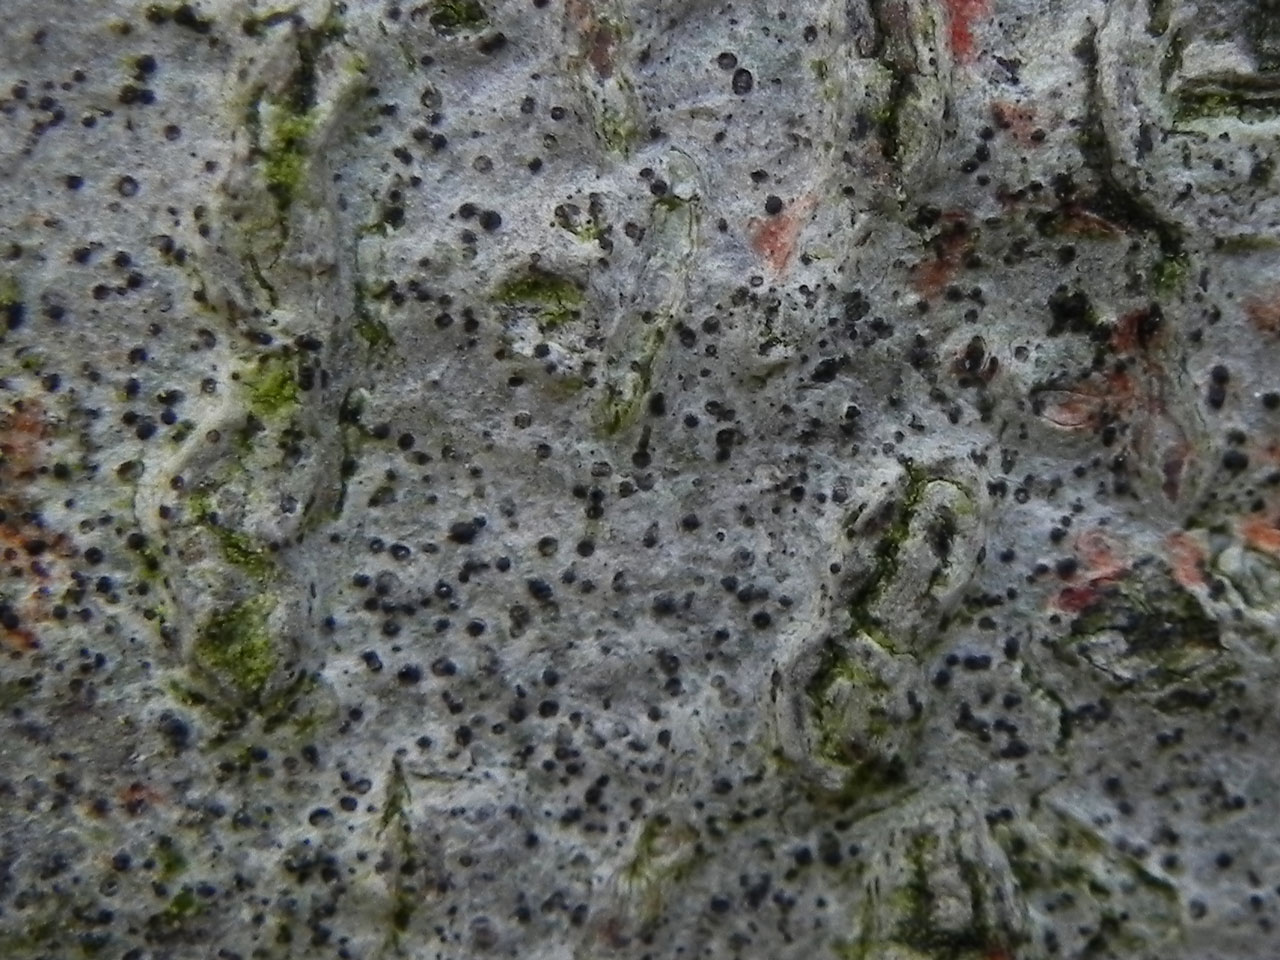 Mycoporum antecellens, Beech, Savernake Forest